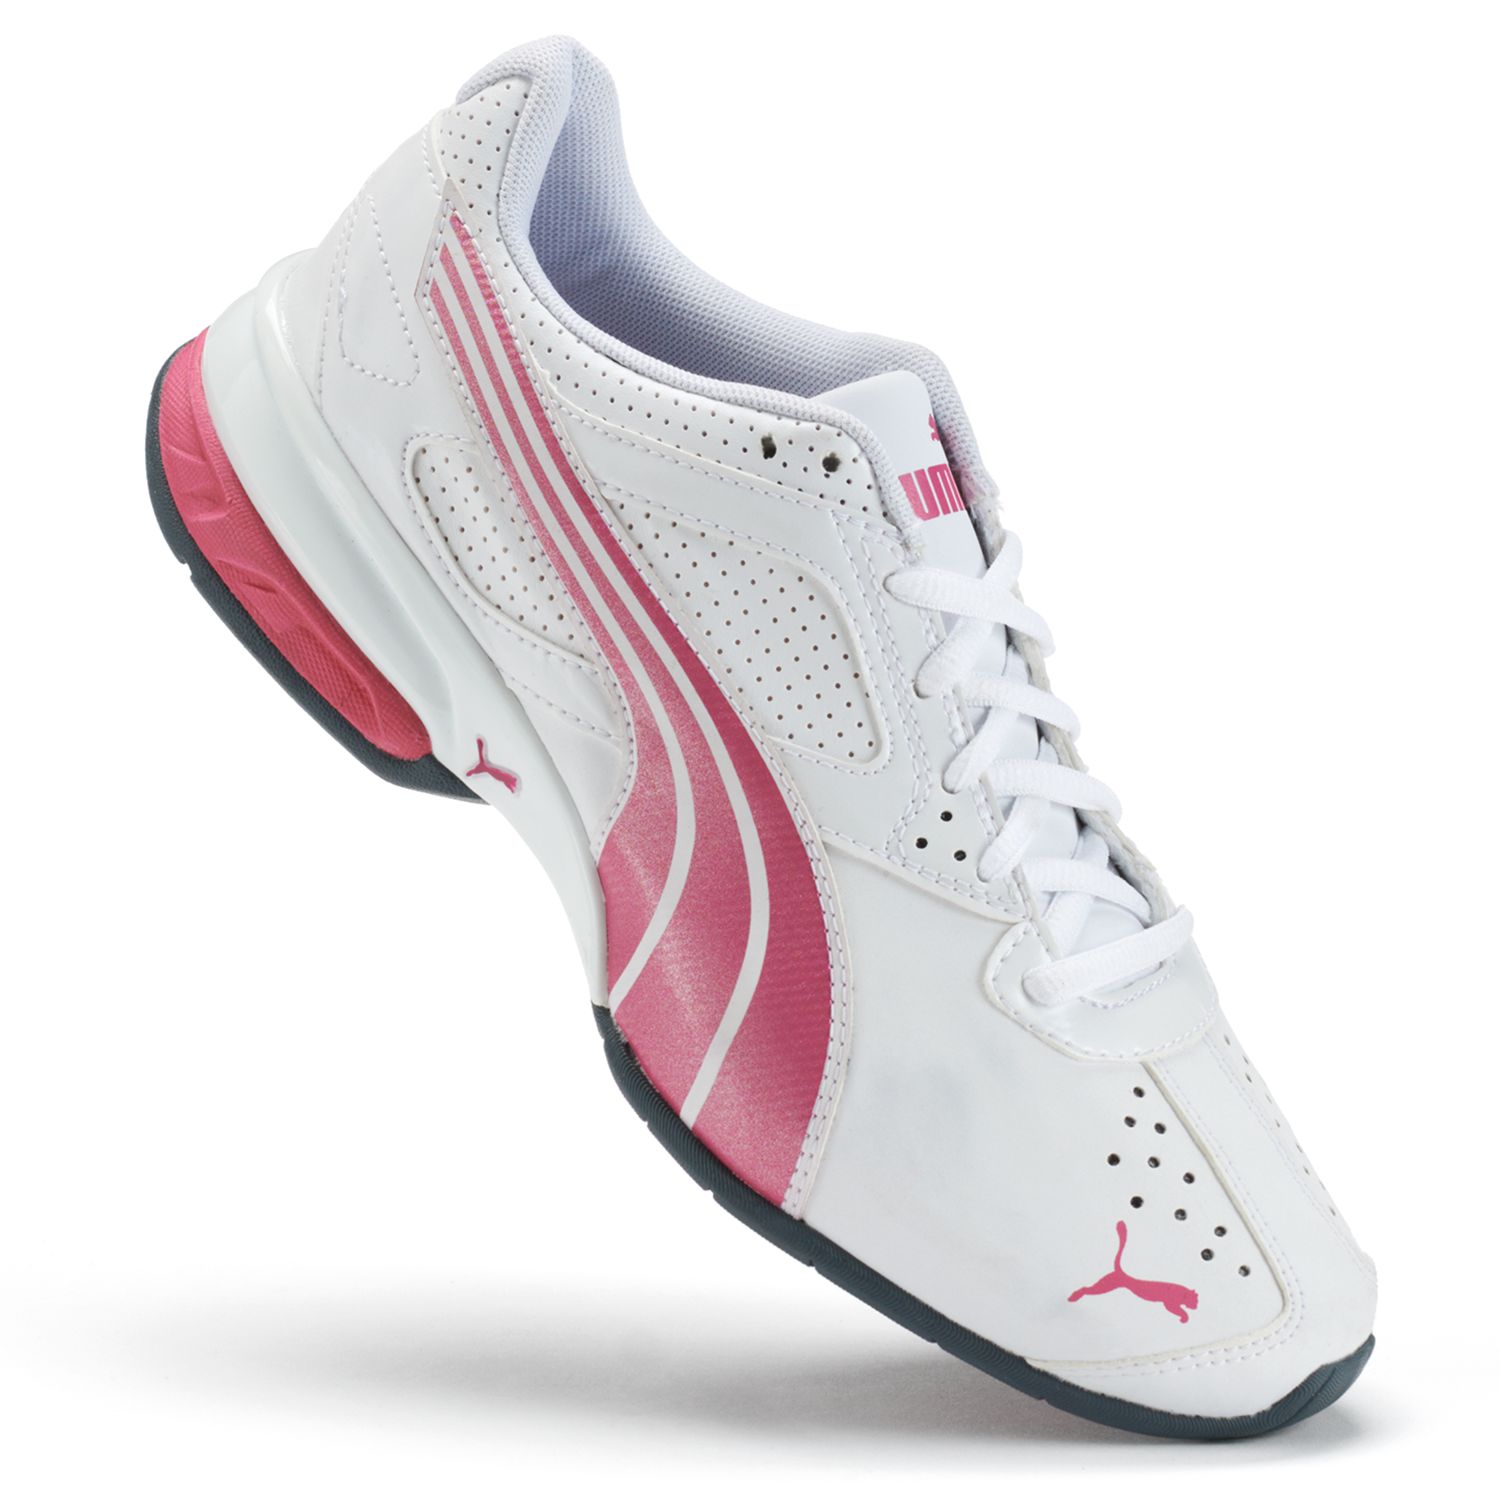 puma women's tazon 5 running shoes